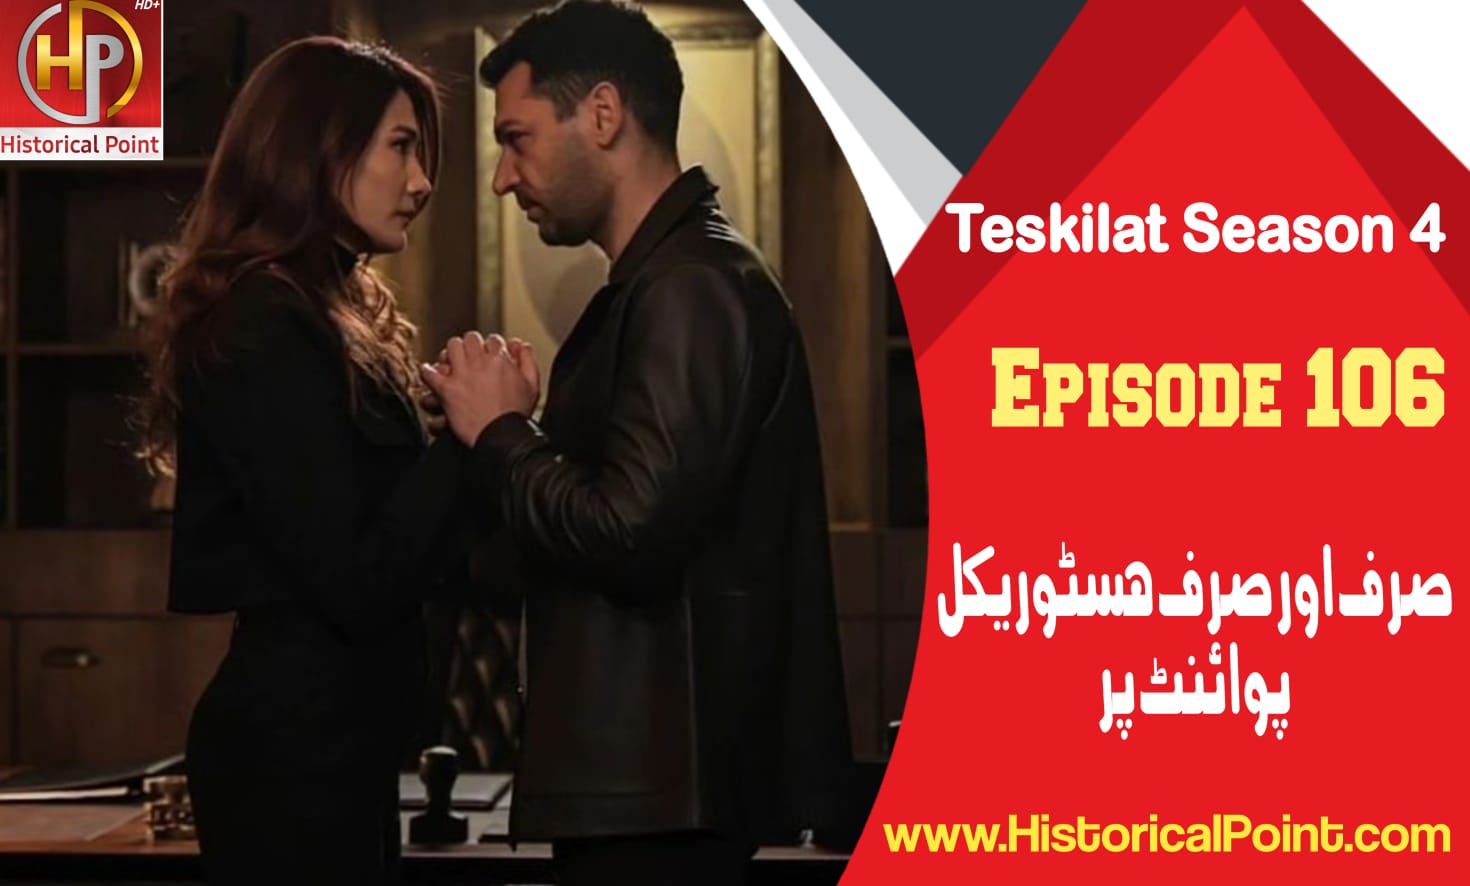 Teskilat Episode 106 in Urdu Subtitles